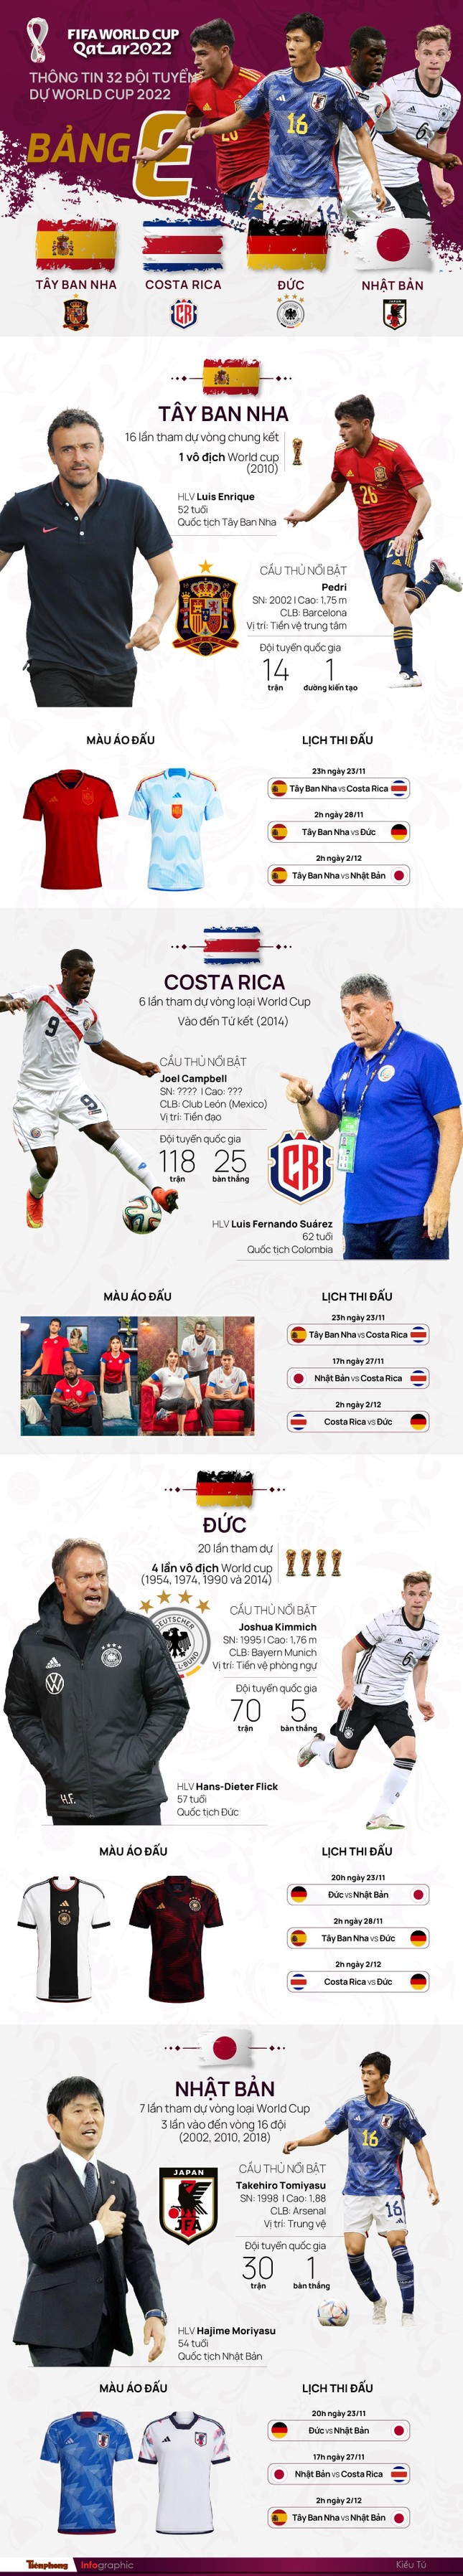 World Cup 2022 - Bảng E (Tây Ban Nha, Đức, Costa Rica, Nhật Bản): Dễ có cú sốc ảnh 2